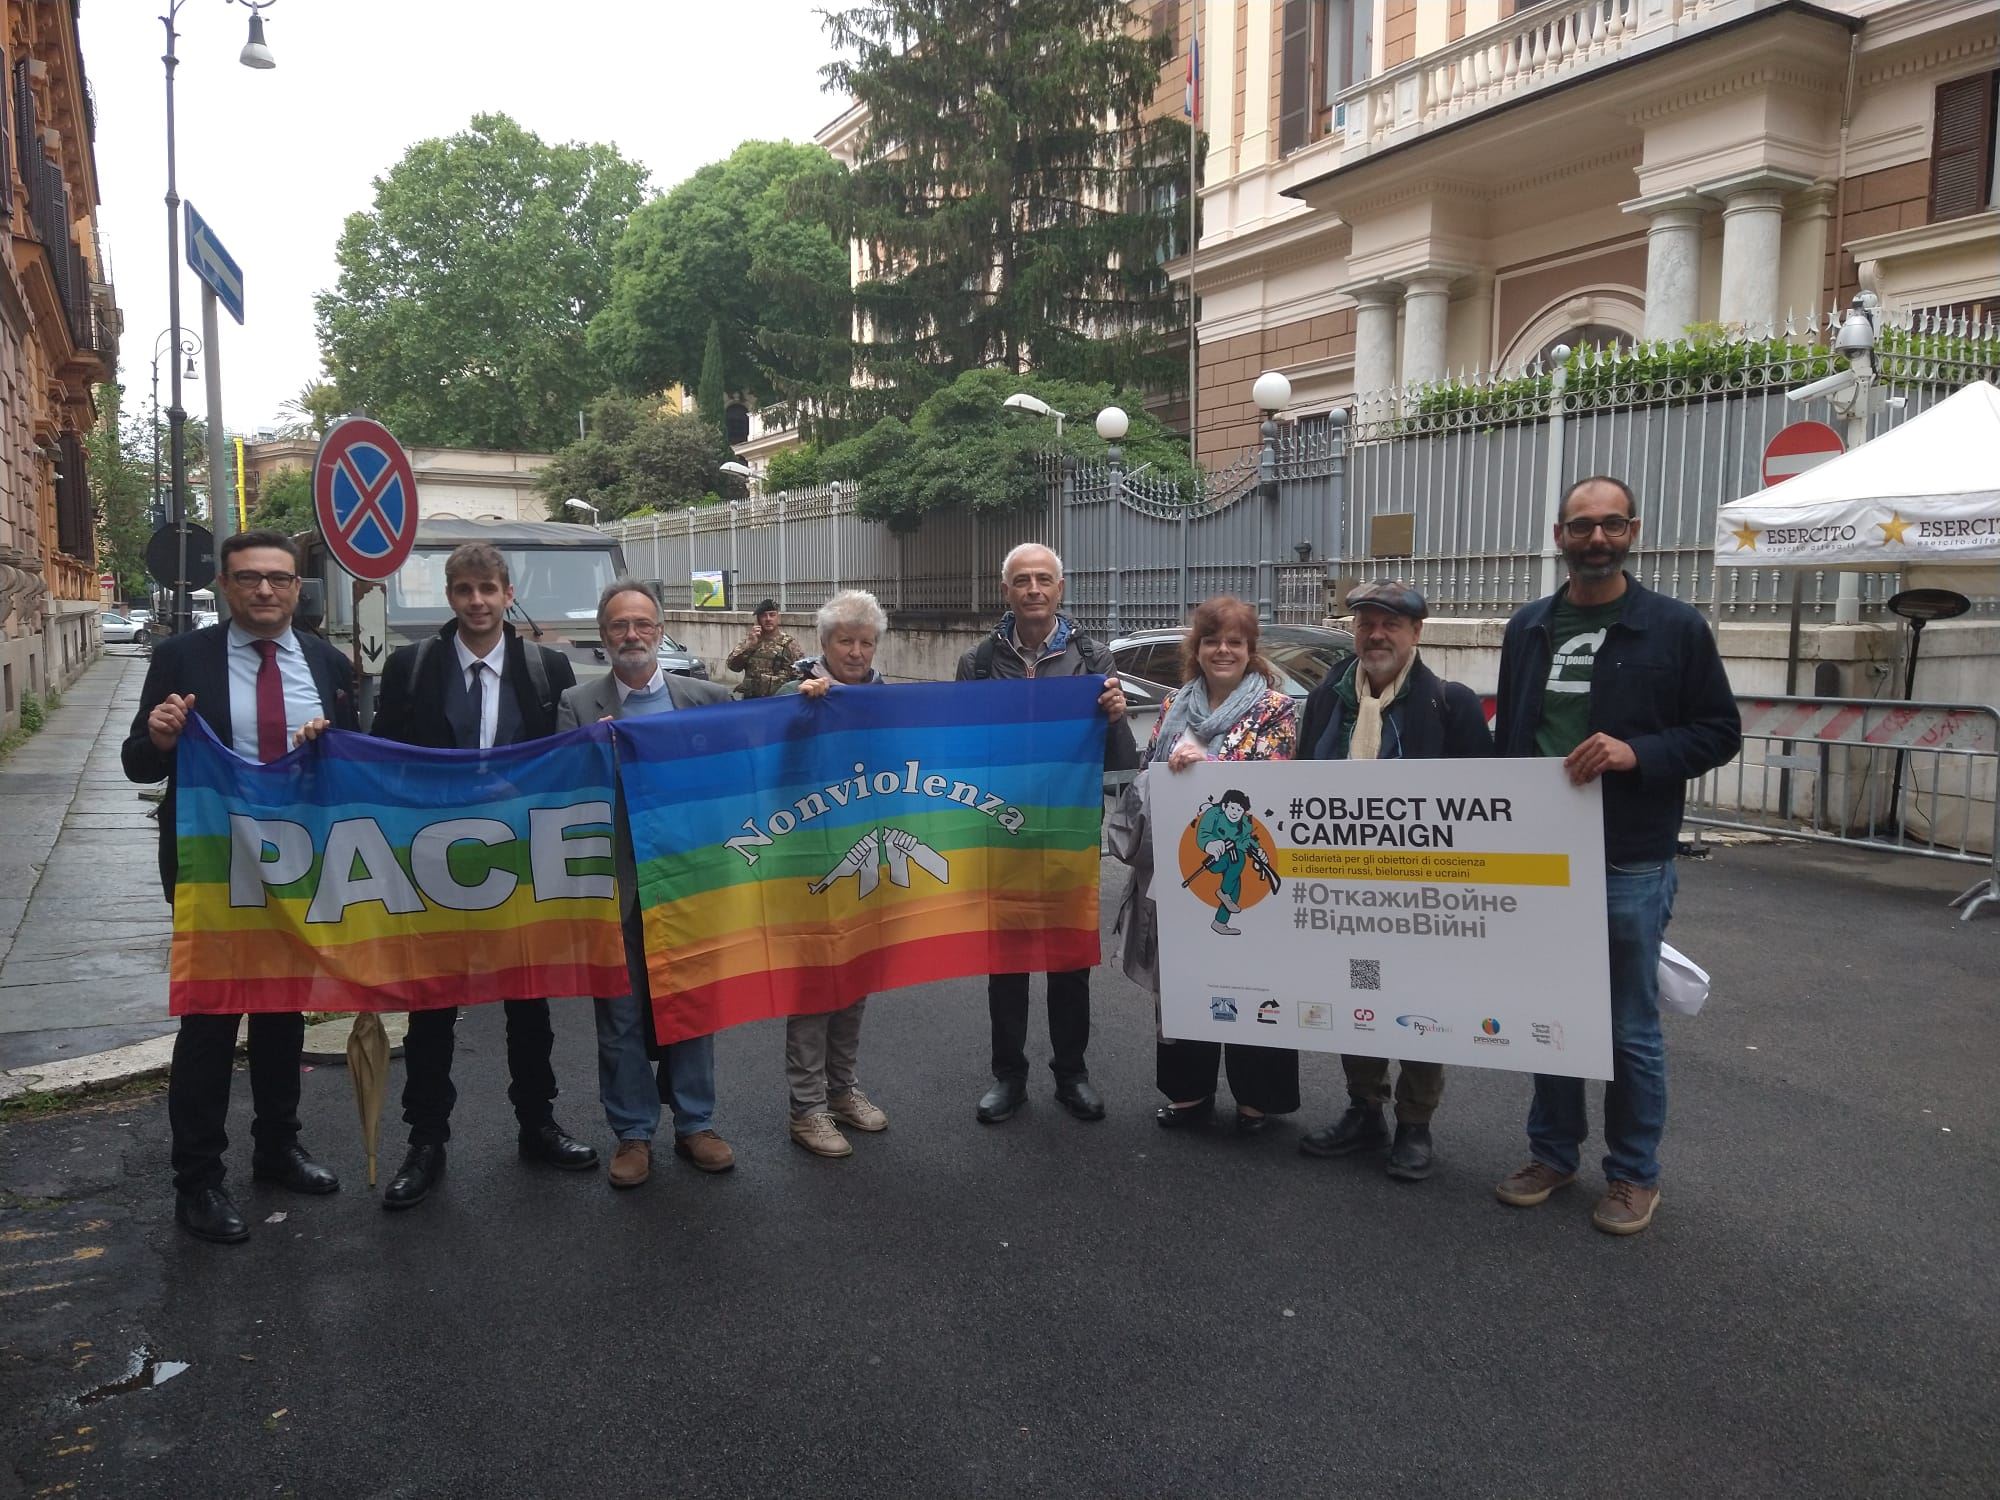 Il presidio degli attivisti davanti all'ambasciata russa